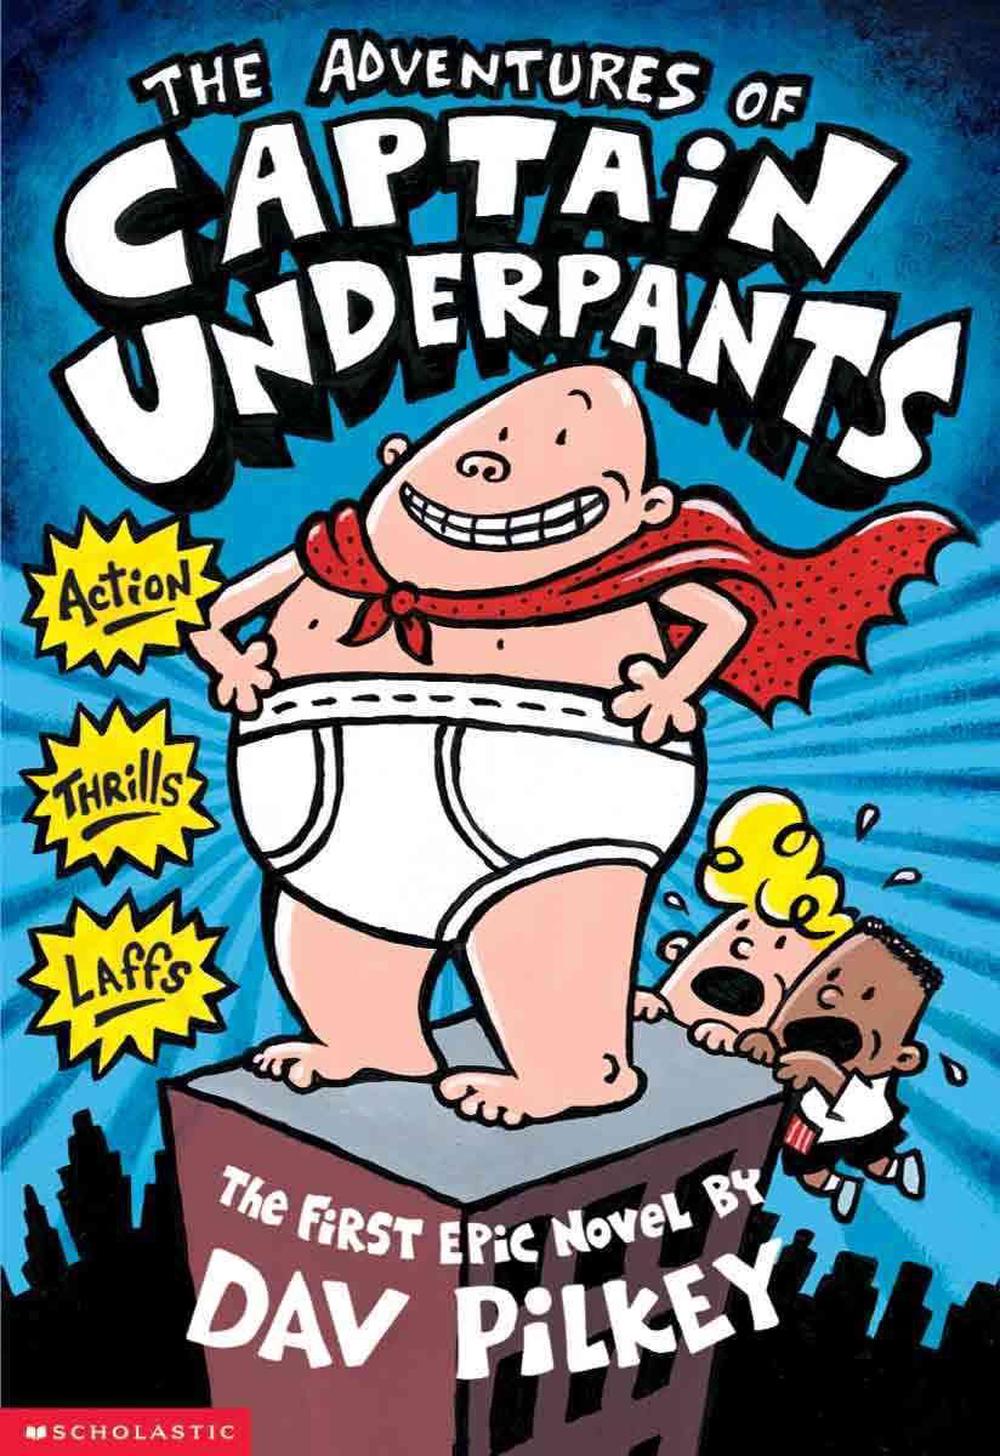 captin underpants show